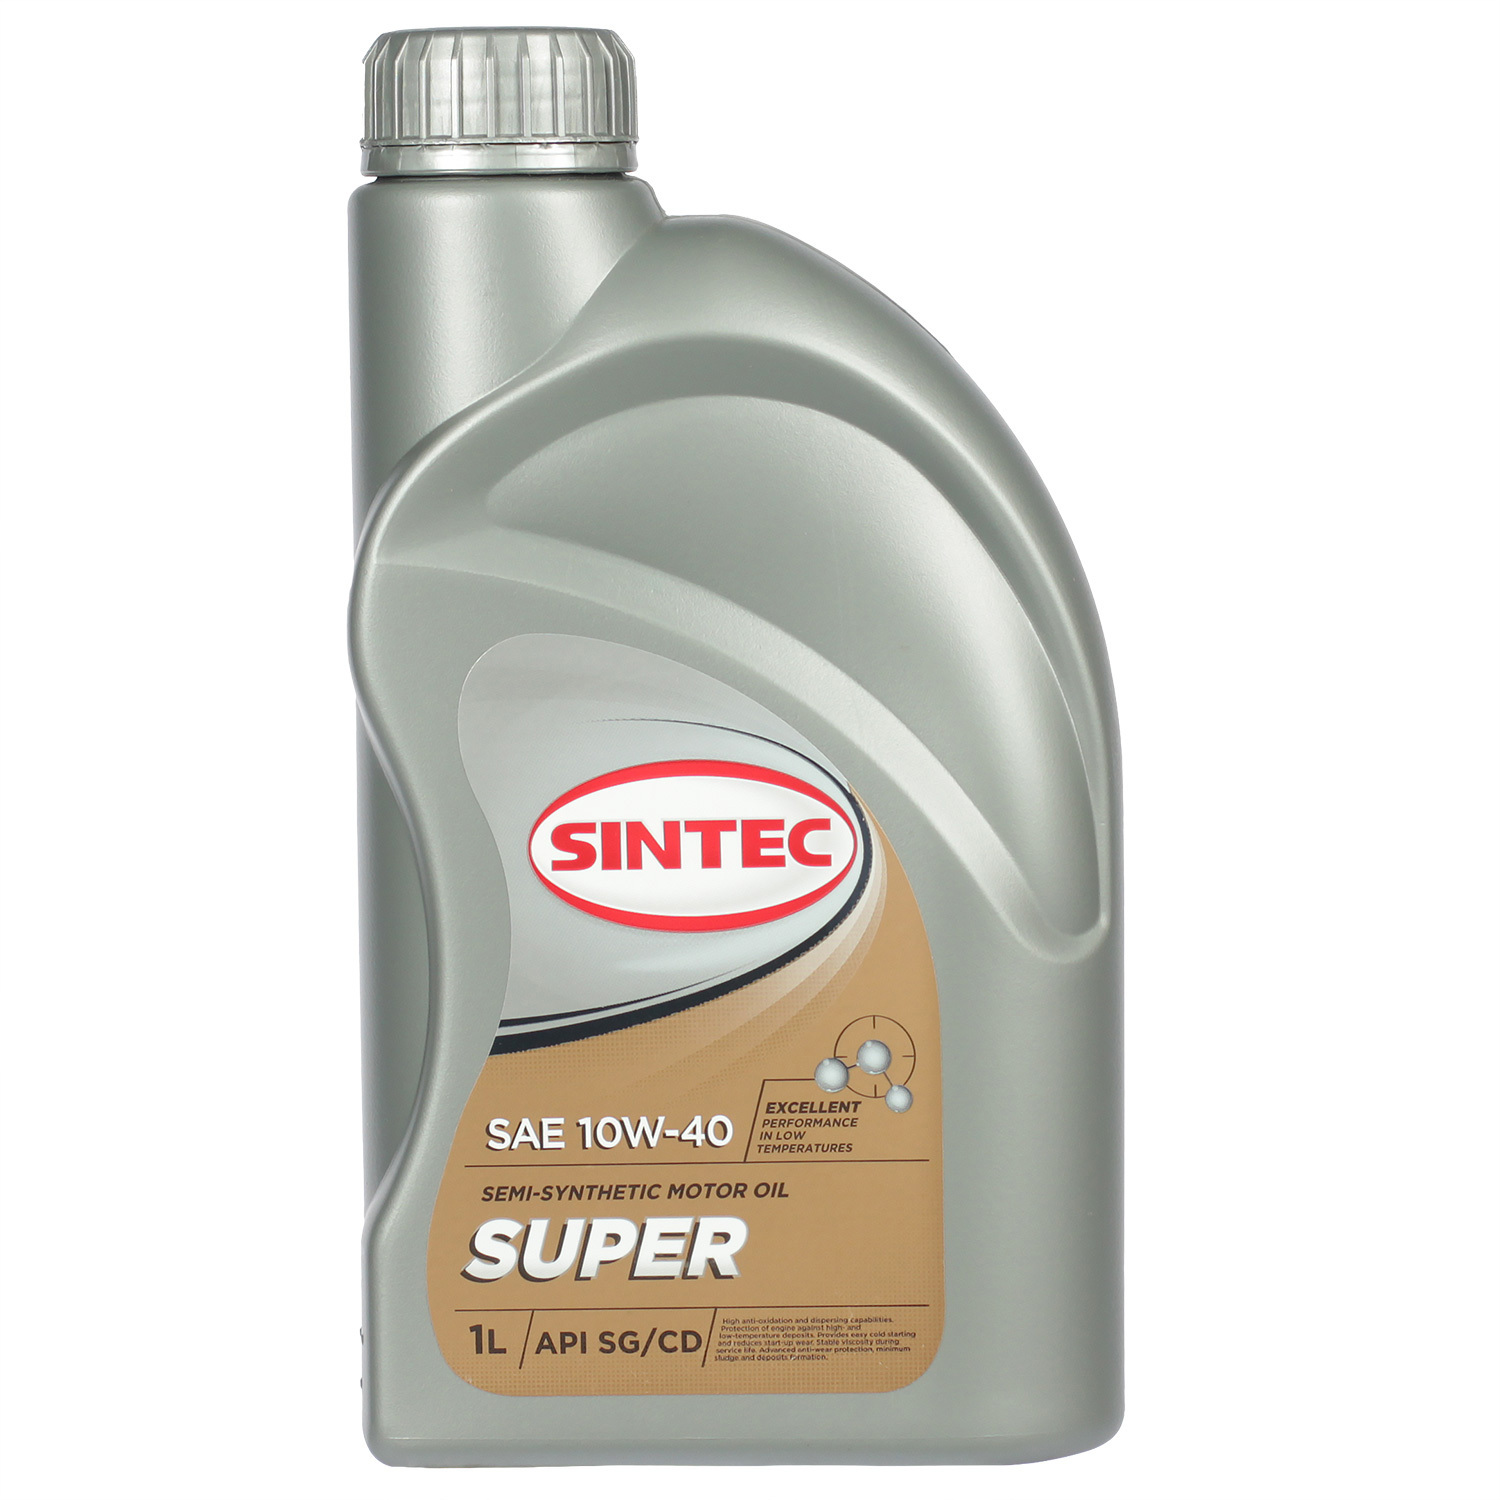 Sintec Моторное масло Sintec Super 3000 10W-40, 1 л масло моторное sintec super 10w 40 sg cd п синтетическое 801893 1 л